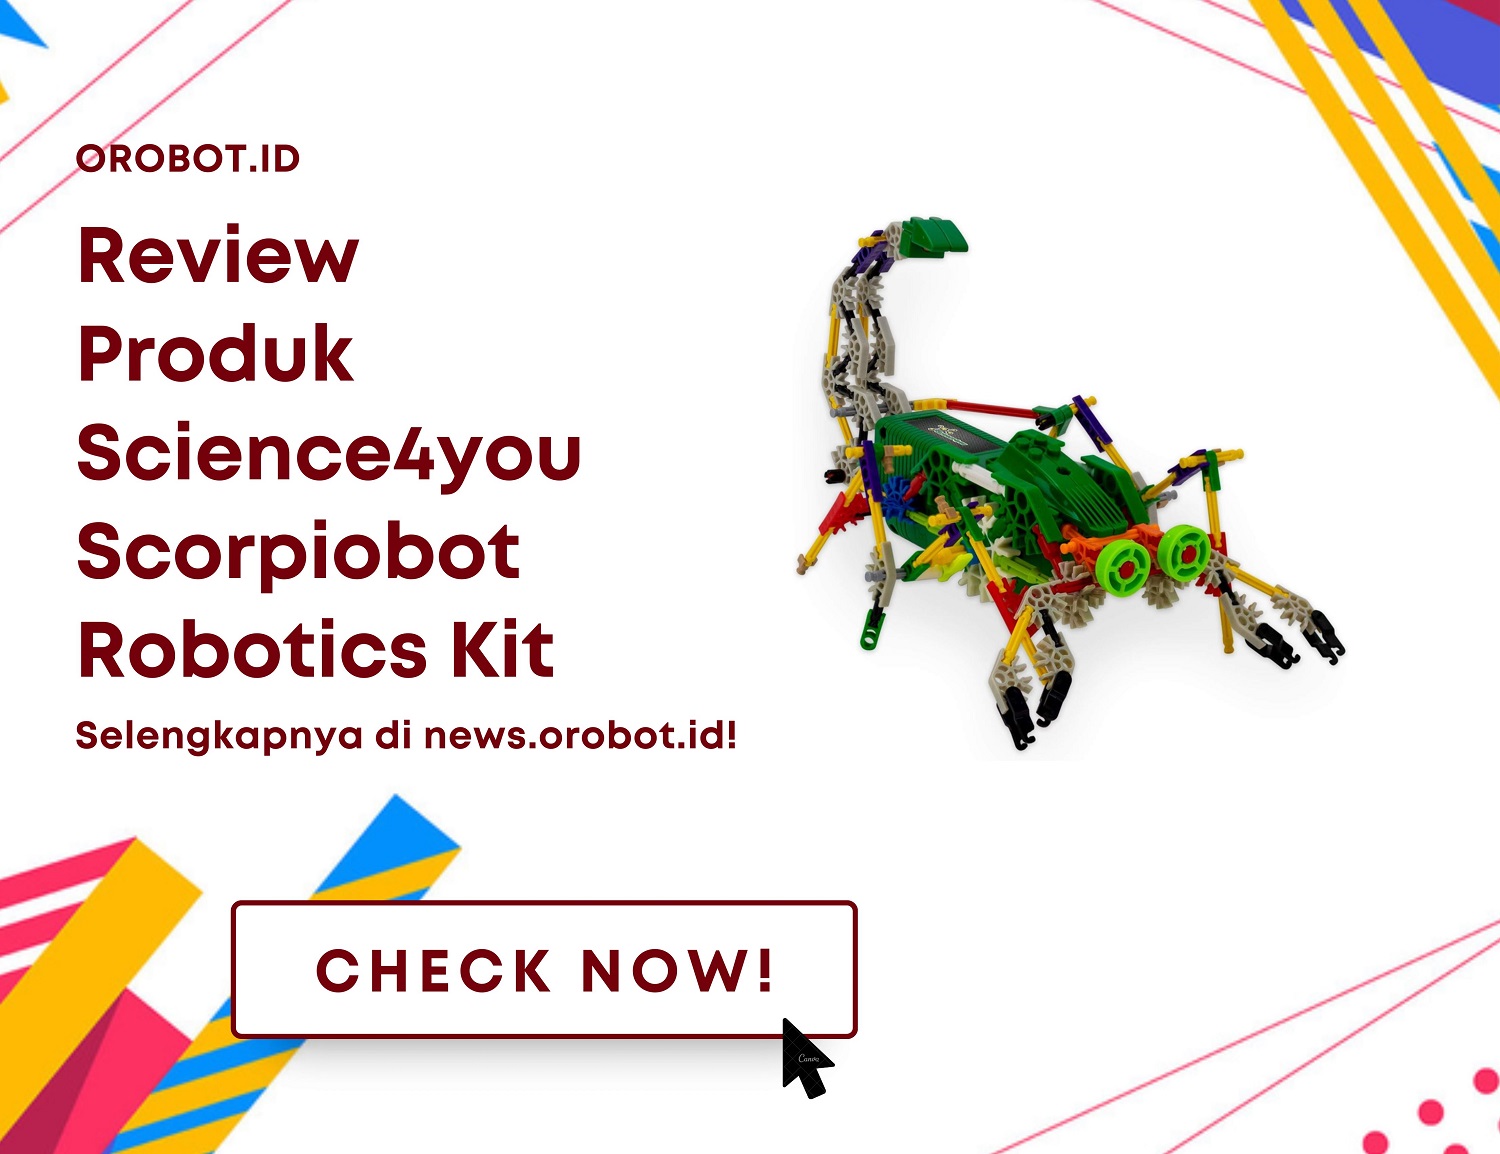 Review Scorpiobot Robotics Kit: Menginspirasi Kreativitas dan Pembelajaran STEM